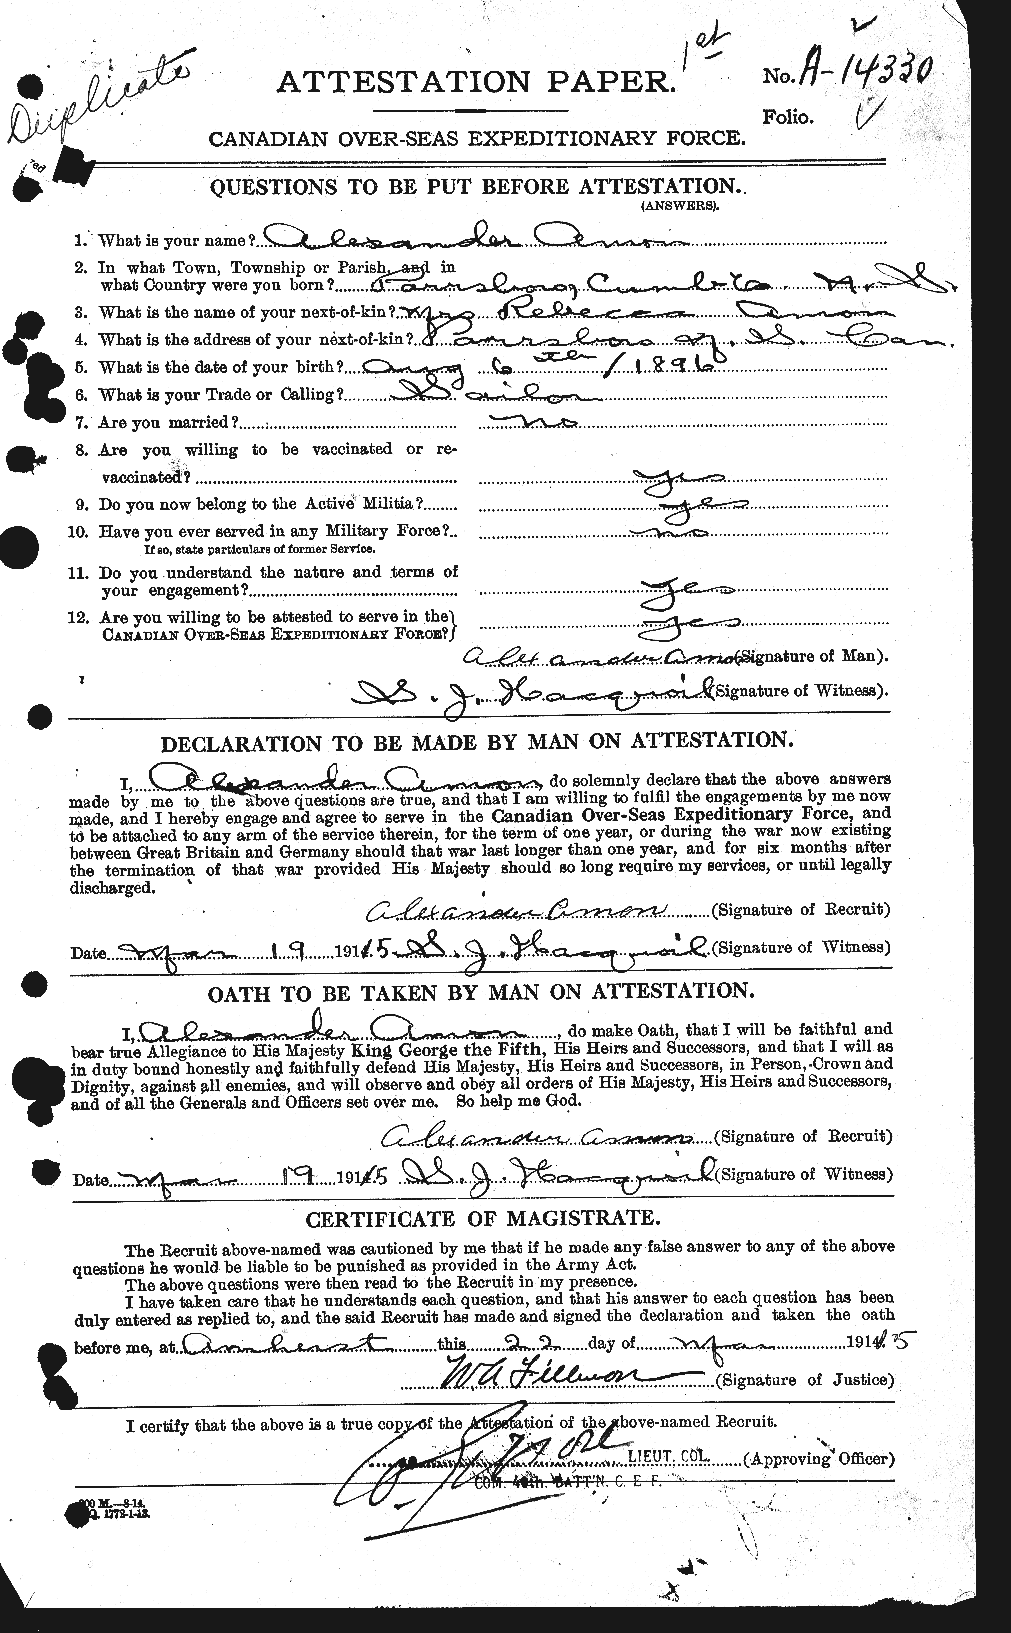 Dossiers du Personnel de la Première Guerre mondiale - CEC 208702a